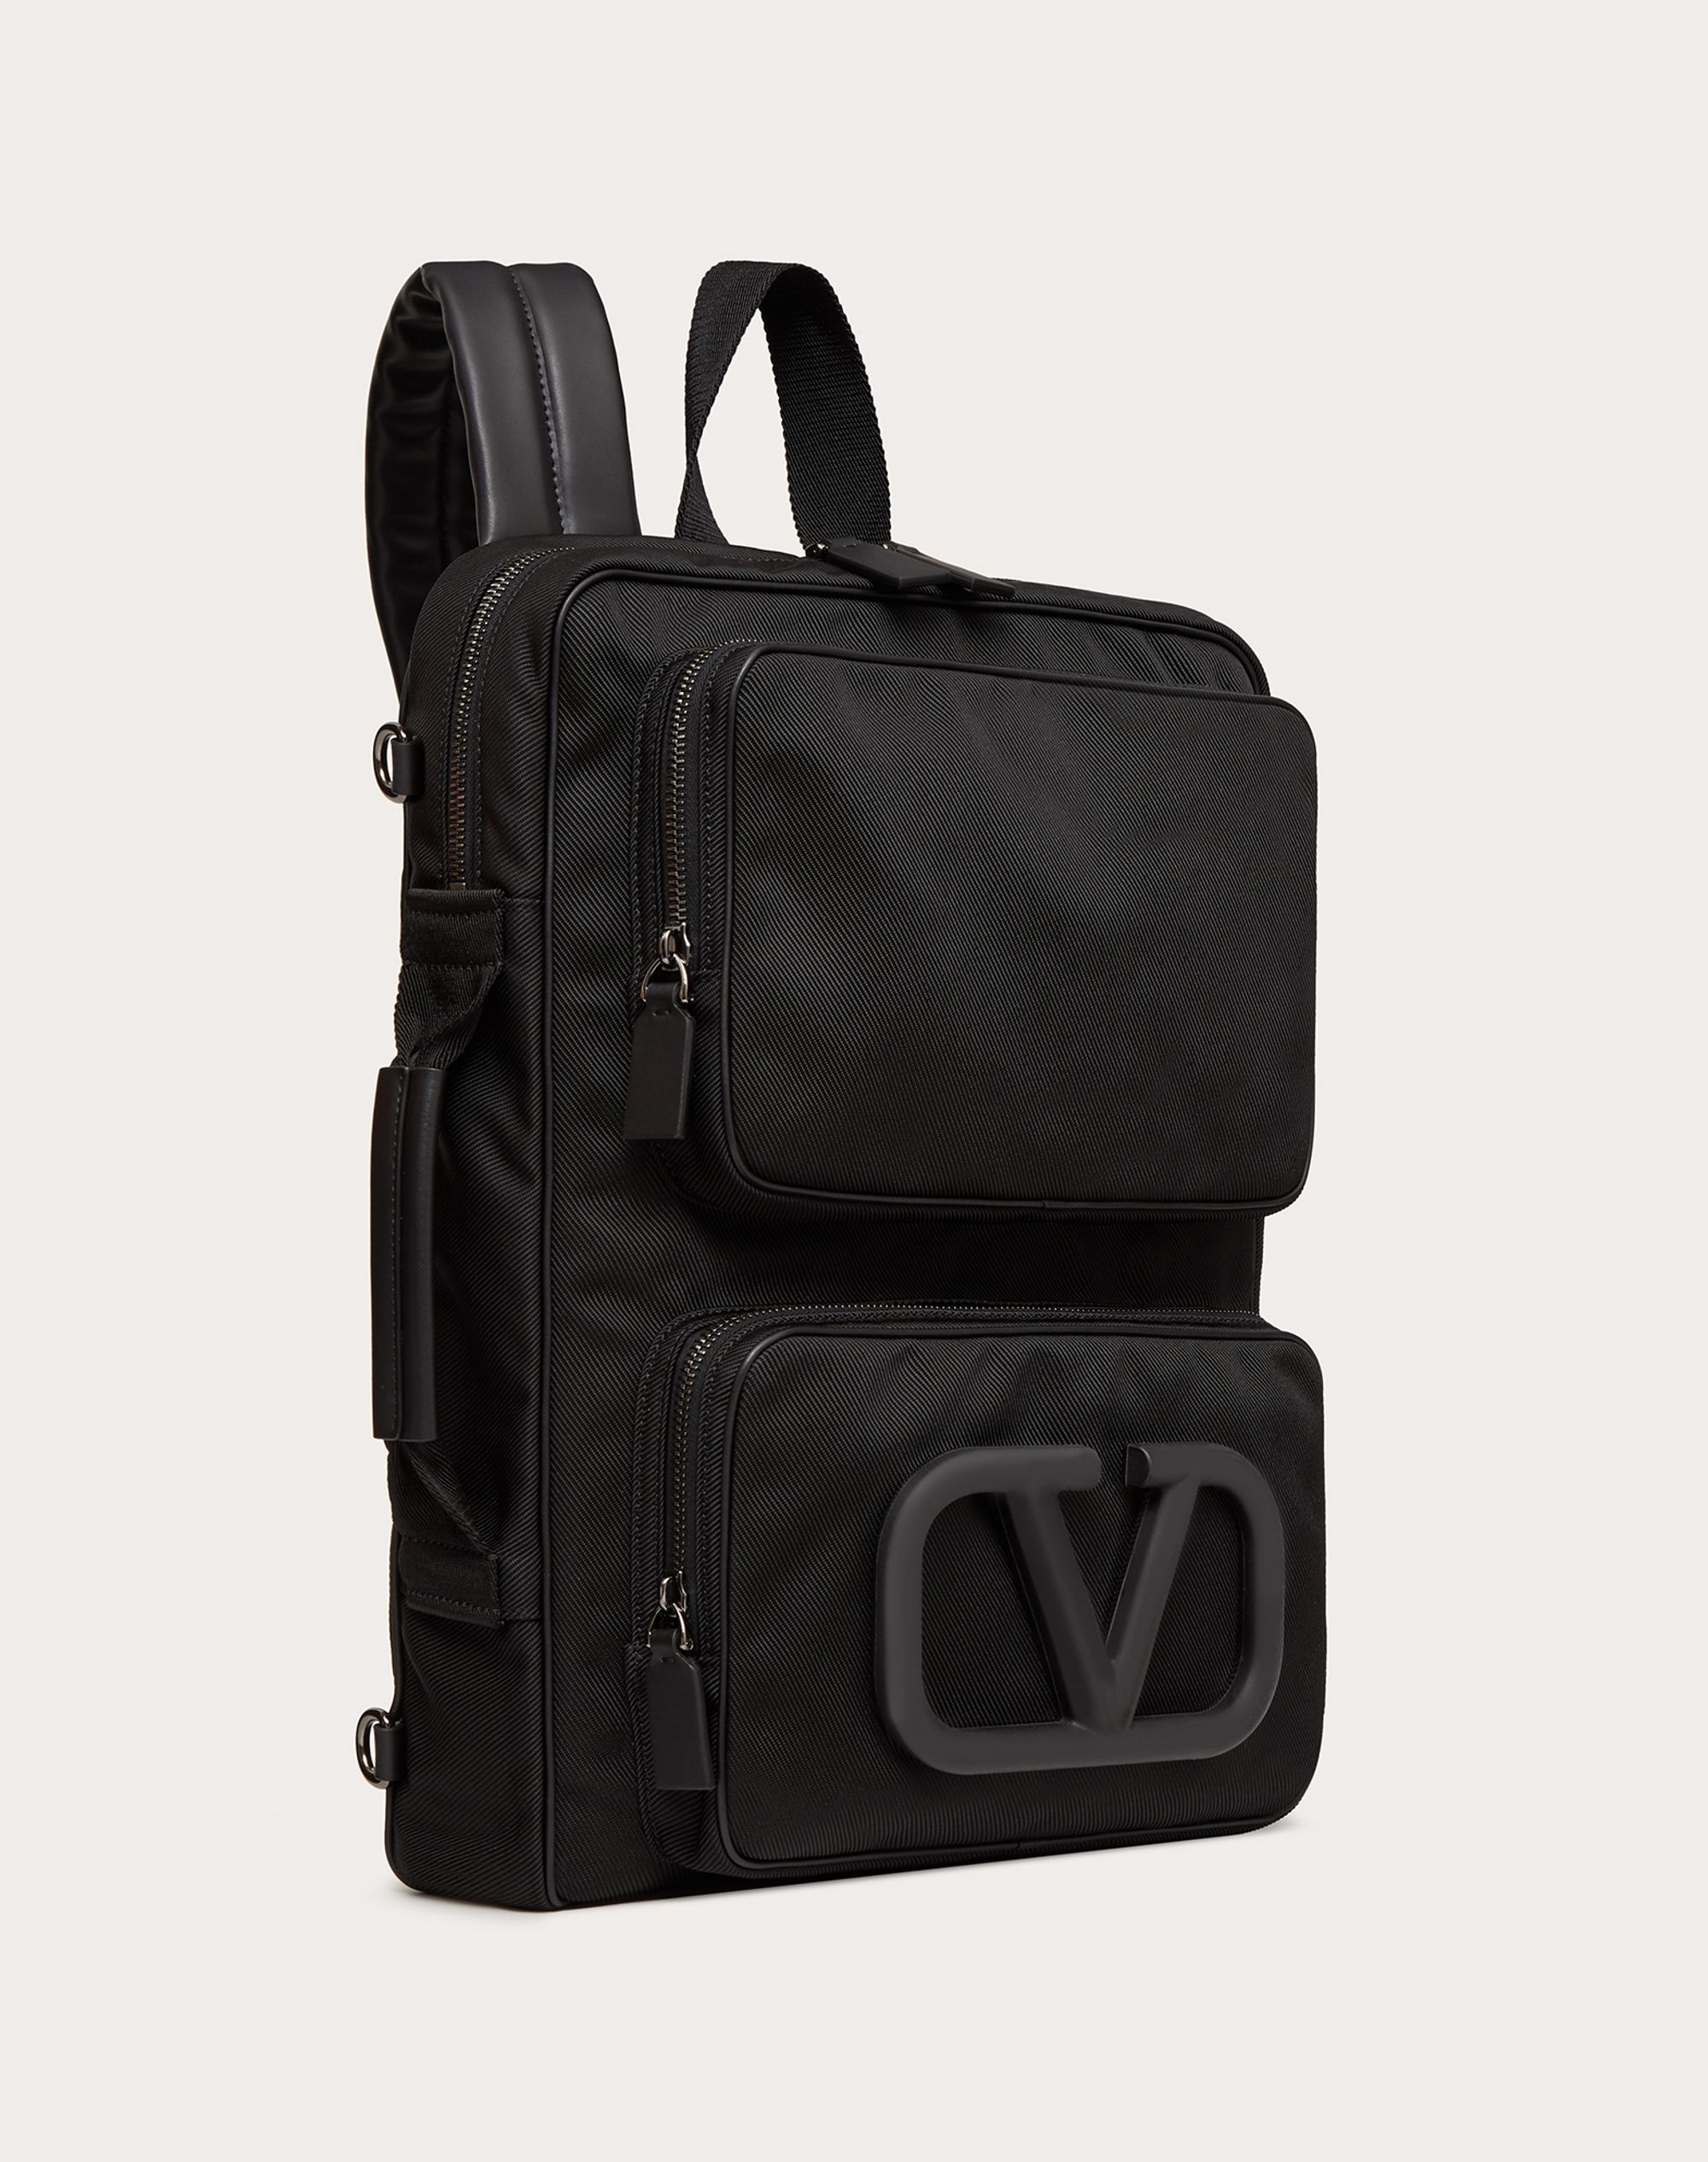 Supervee Backpack in Nylon - 2